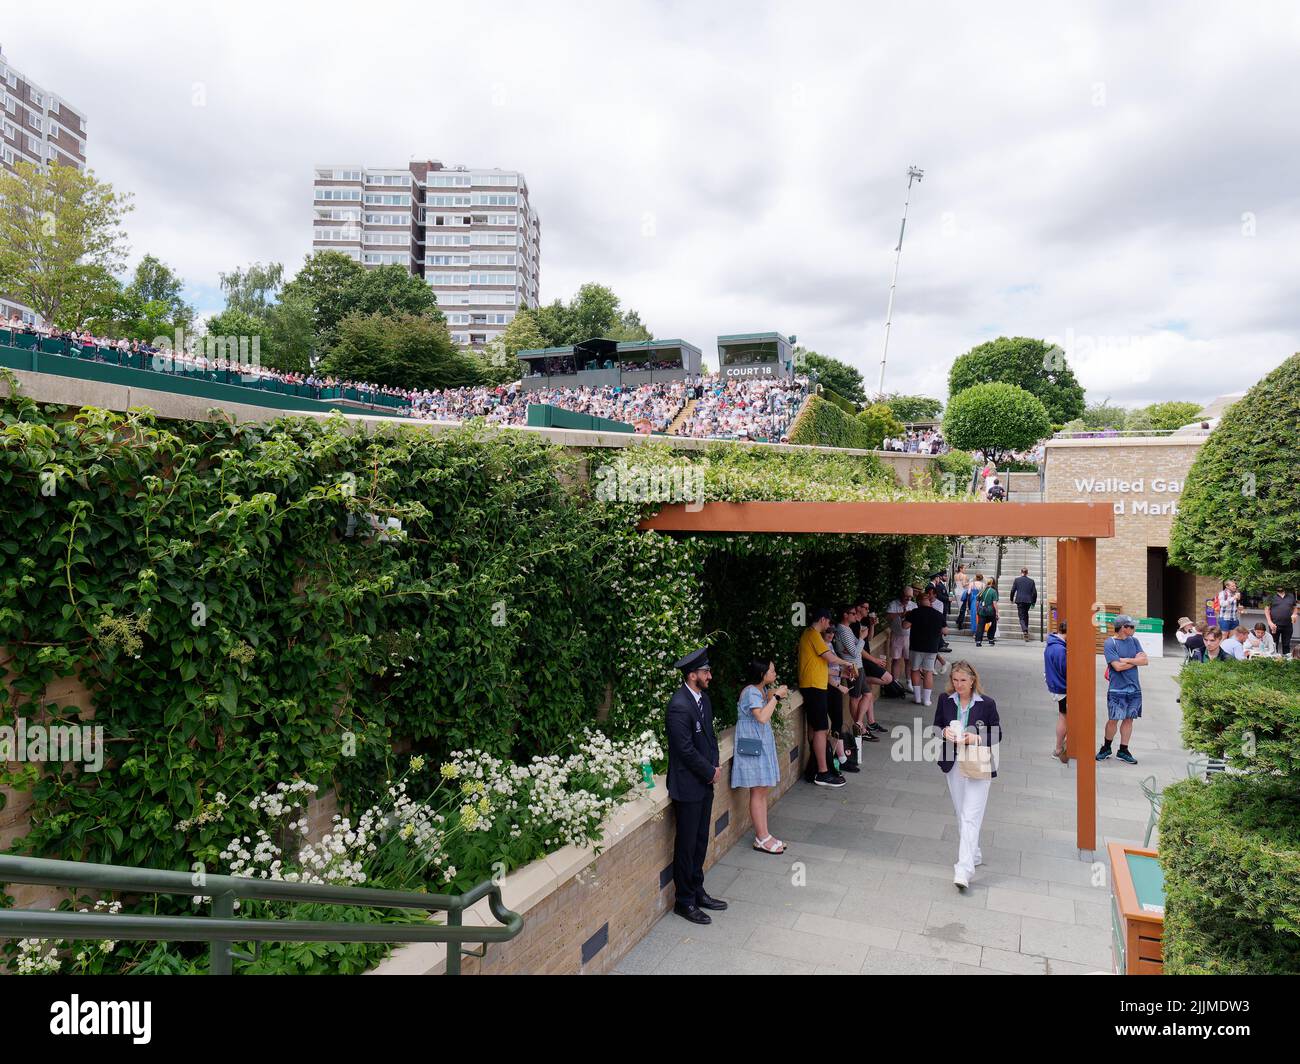 Wimbledon, Grand Londres, Angleterre, 02 juillet 2022: Championnat de tennis de Wimbledon. Court extérieur plein de spectateurs et un bloc d'appartements à proximité. Banque D'Images